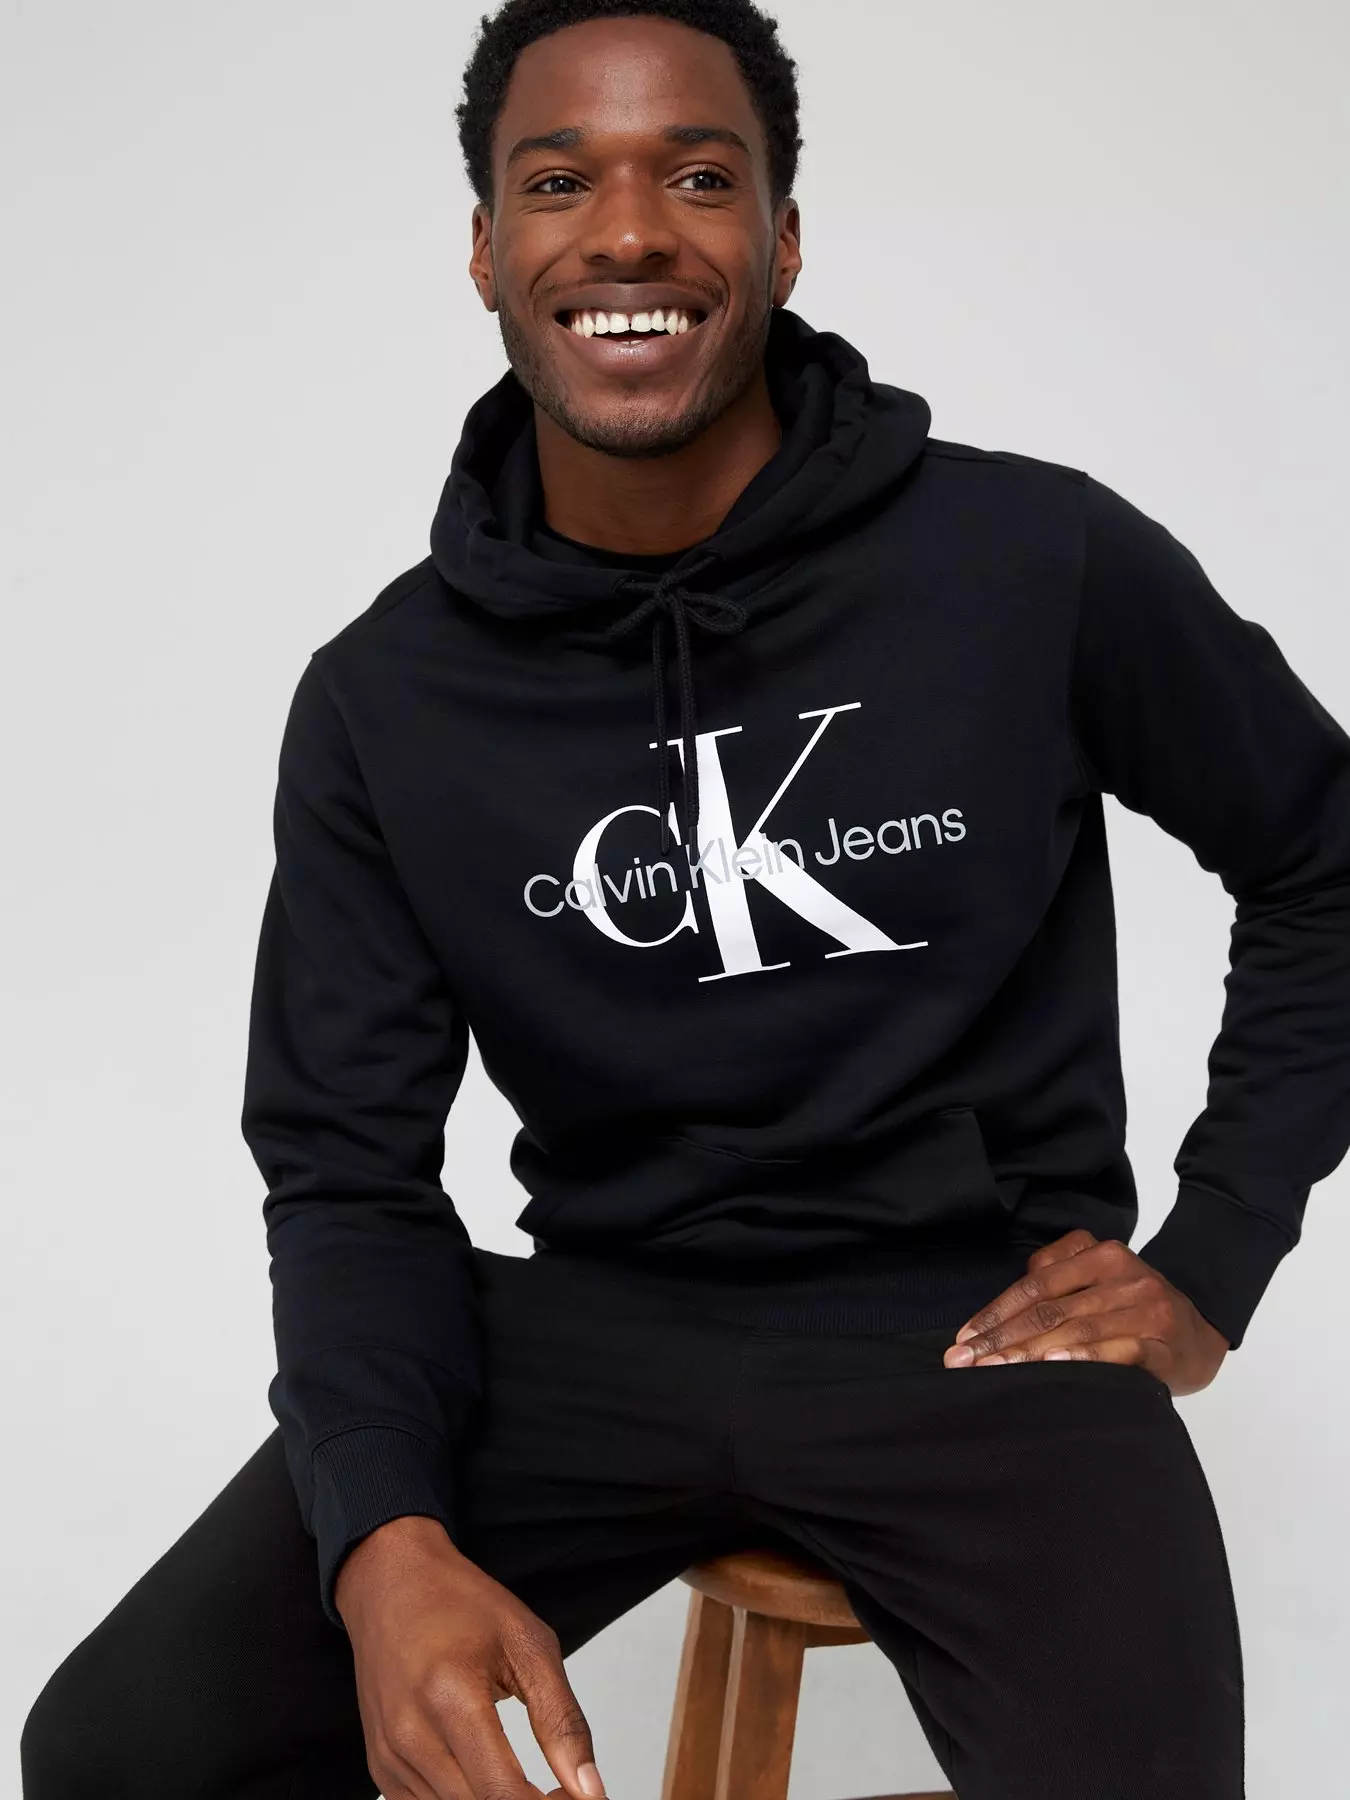 Gemengd helpen uitvinding Men's Calvin Klein Hoodies & Sweatshirts | Very.co.uk